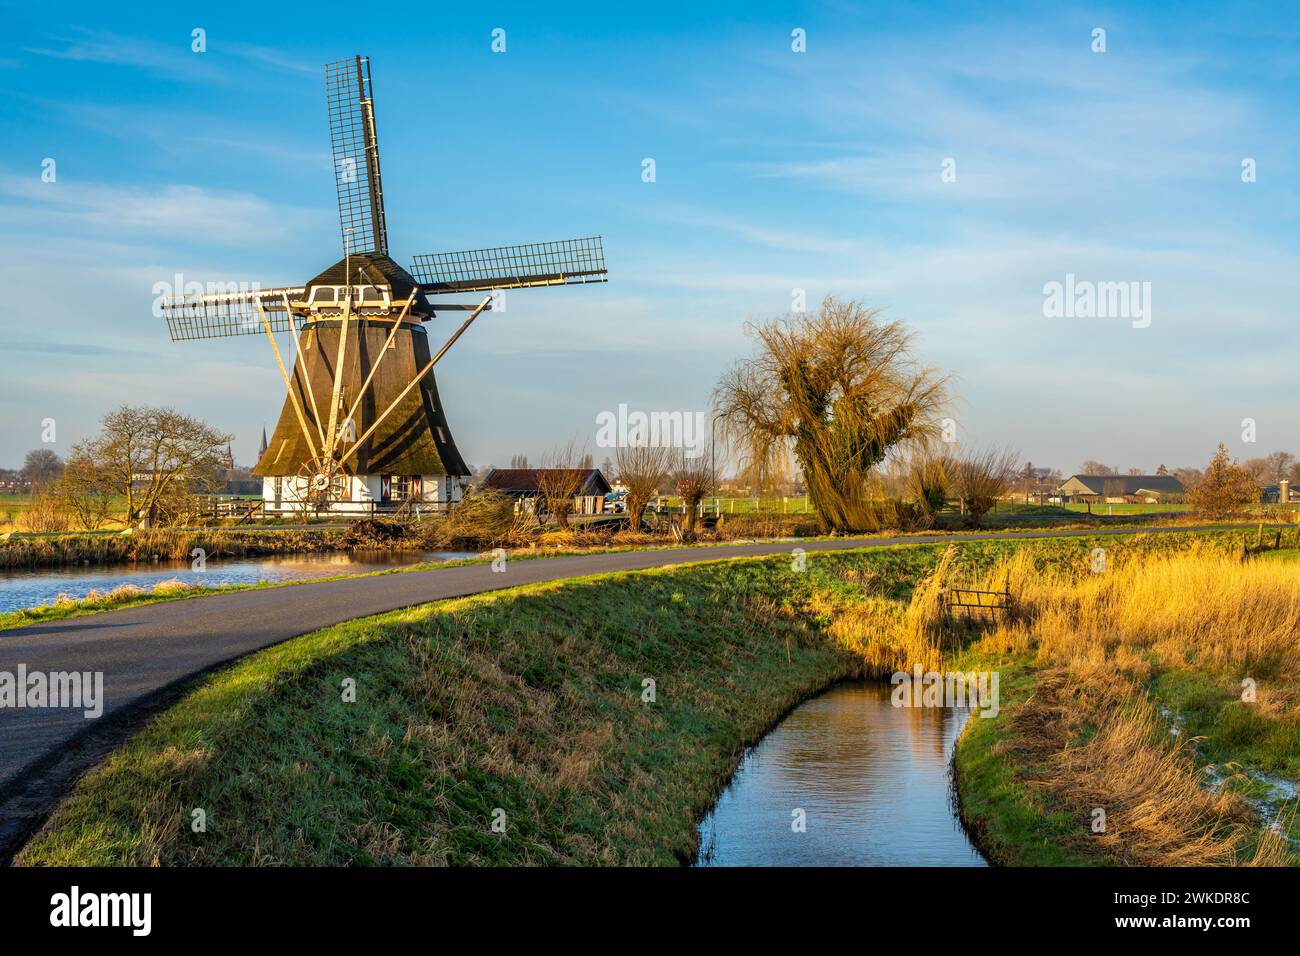 Beau paysage hollandais, route sinueuse le long du moulin à vent traditionnel et vieux saule par une journée ensoleillée Banque D'Images